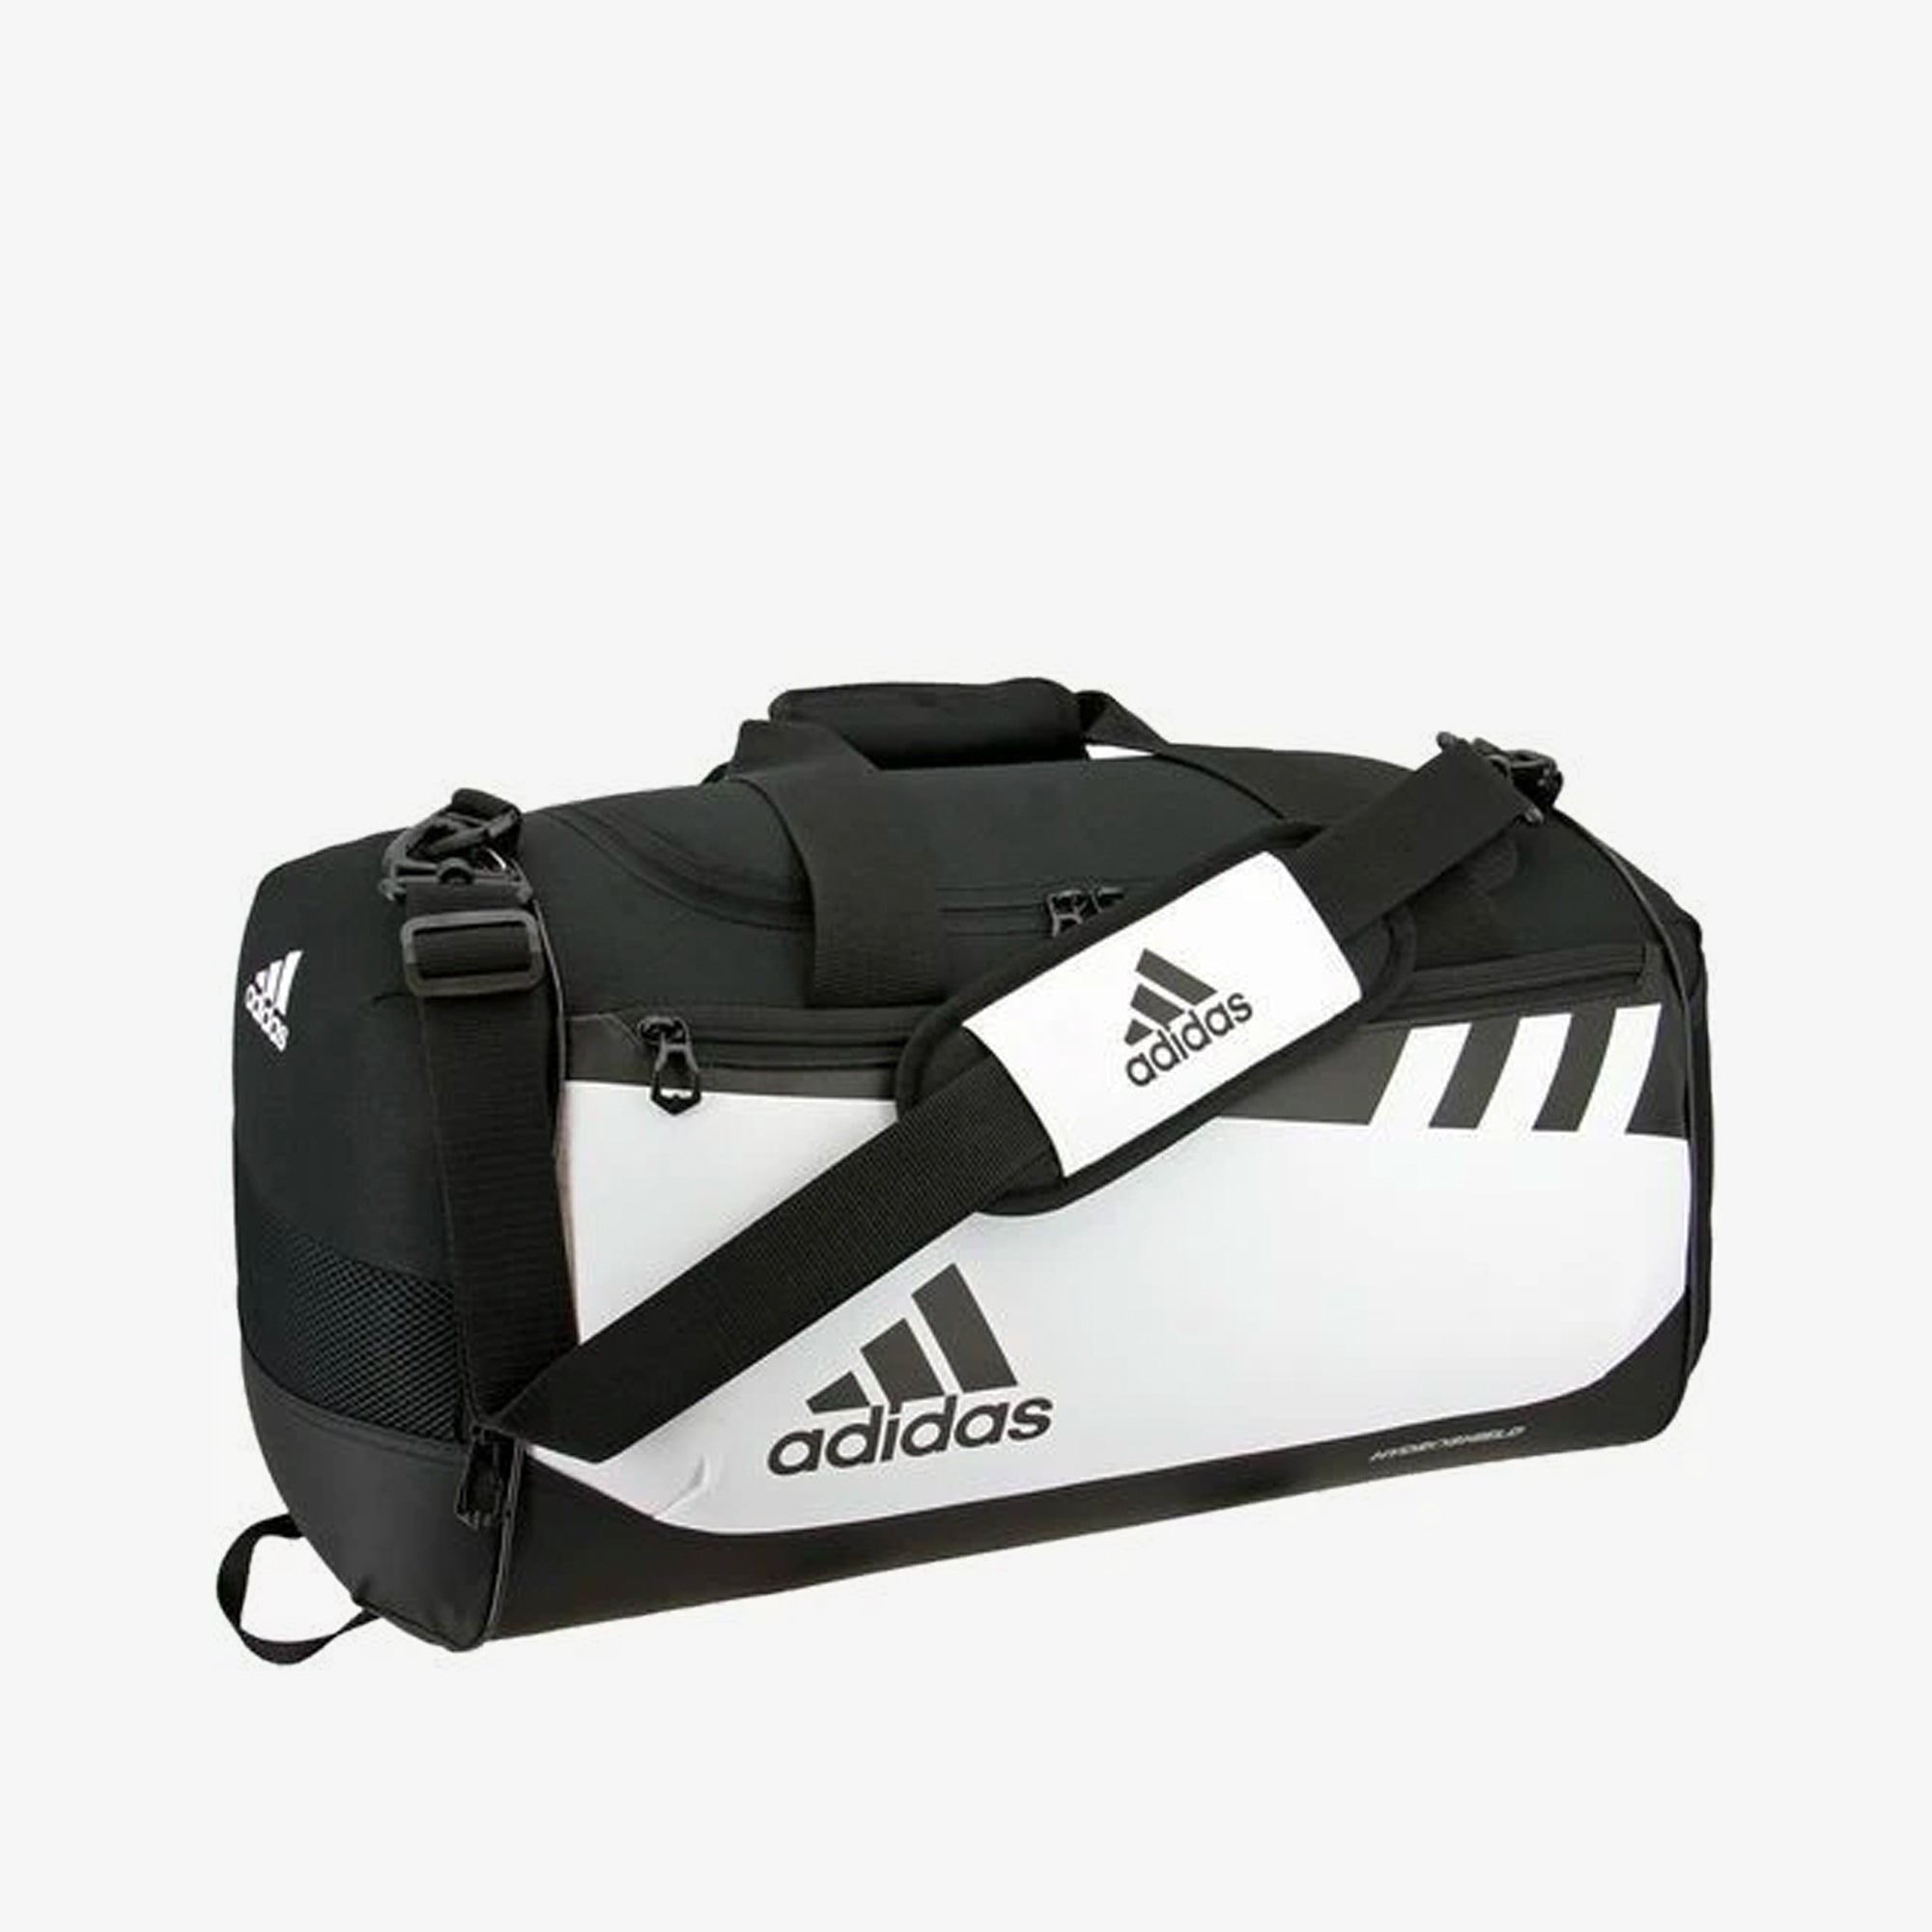 adidas team issue small duffel